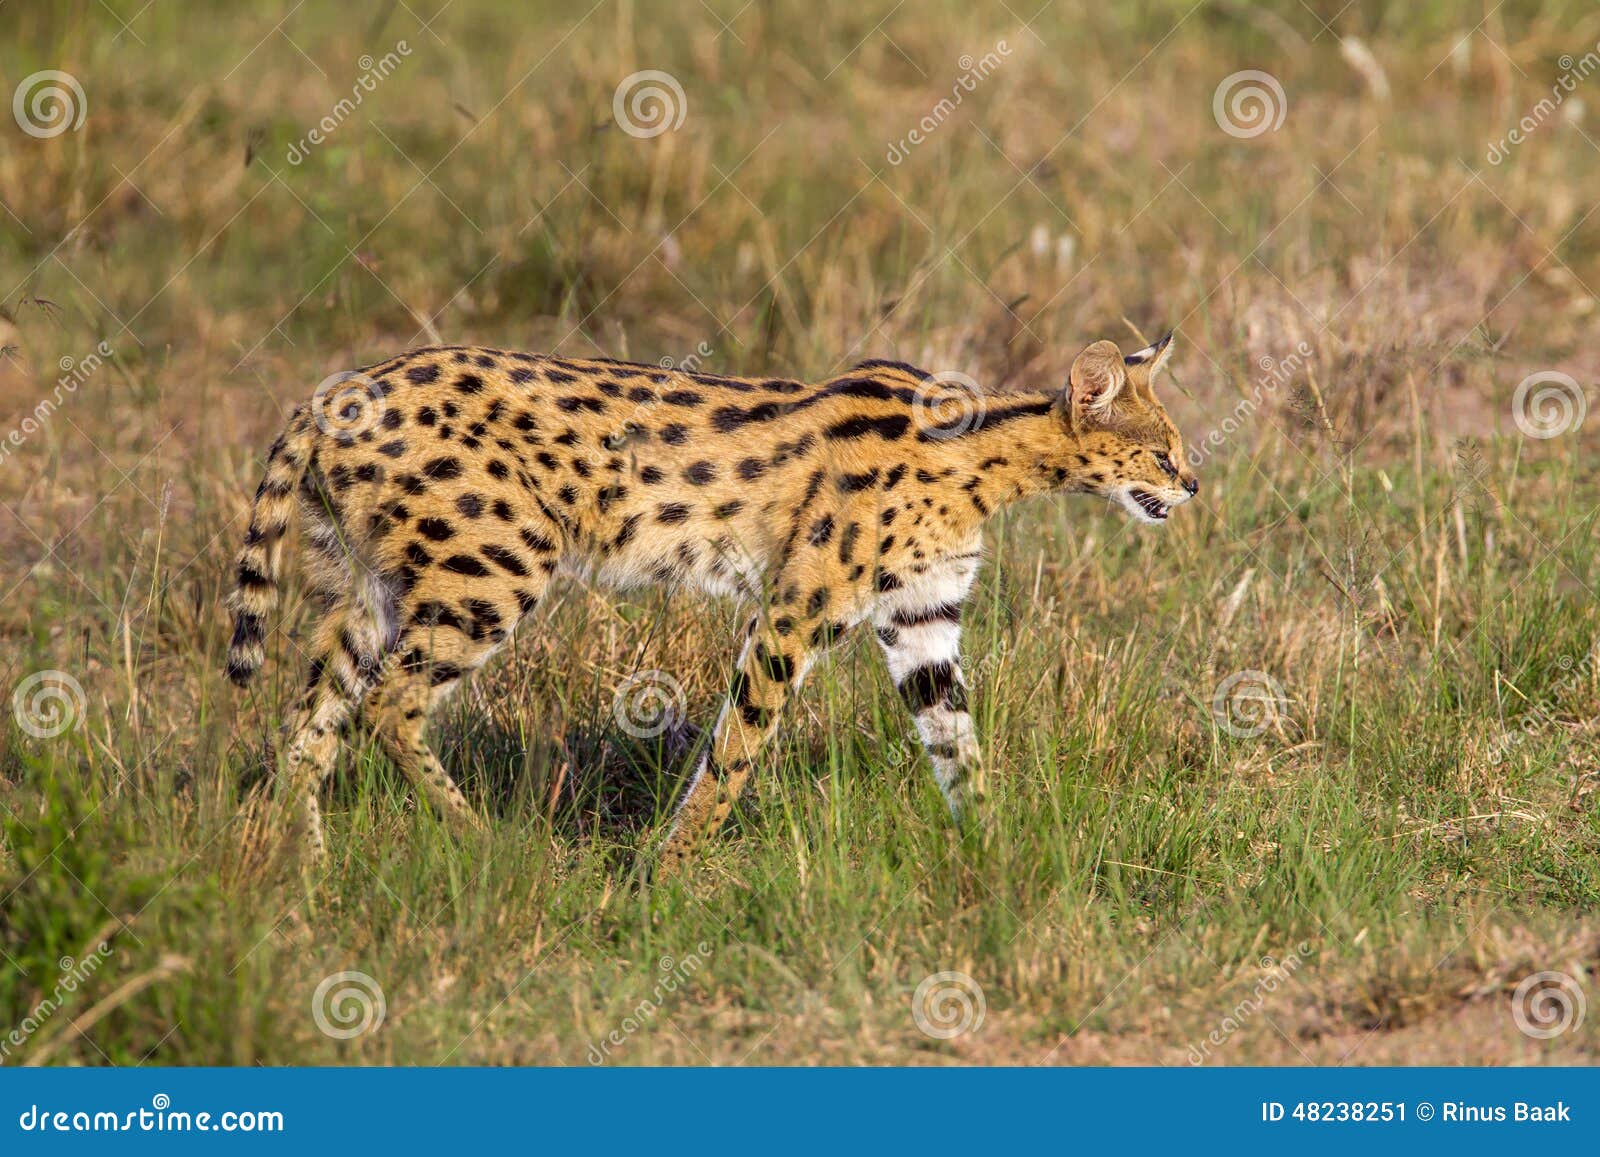 adult serval